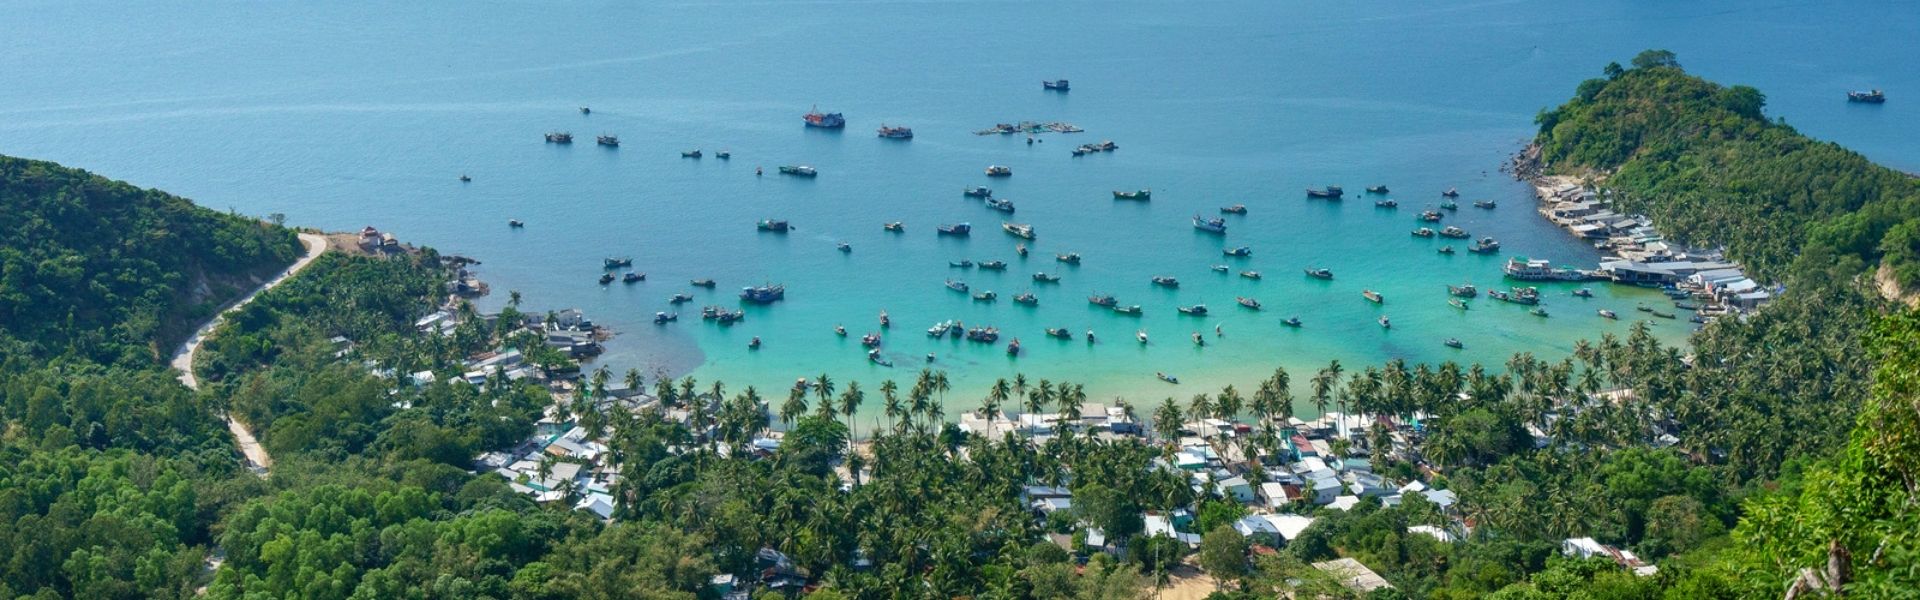 Kinh nghiệm du lịch đảo Nam Du tự túc từ A đến Z - khám phá hòn đảo ngọc thơ mộng ở Kiên Giang